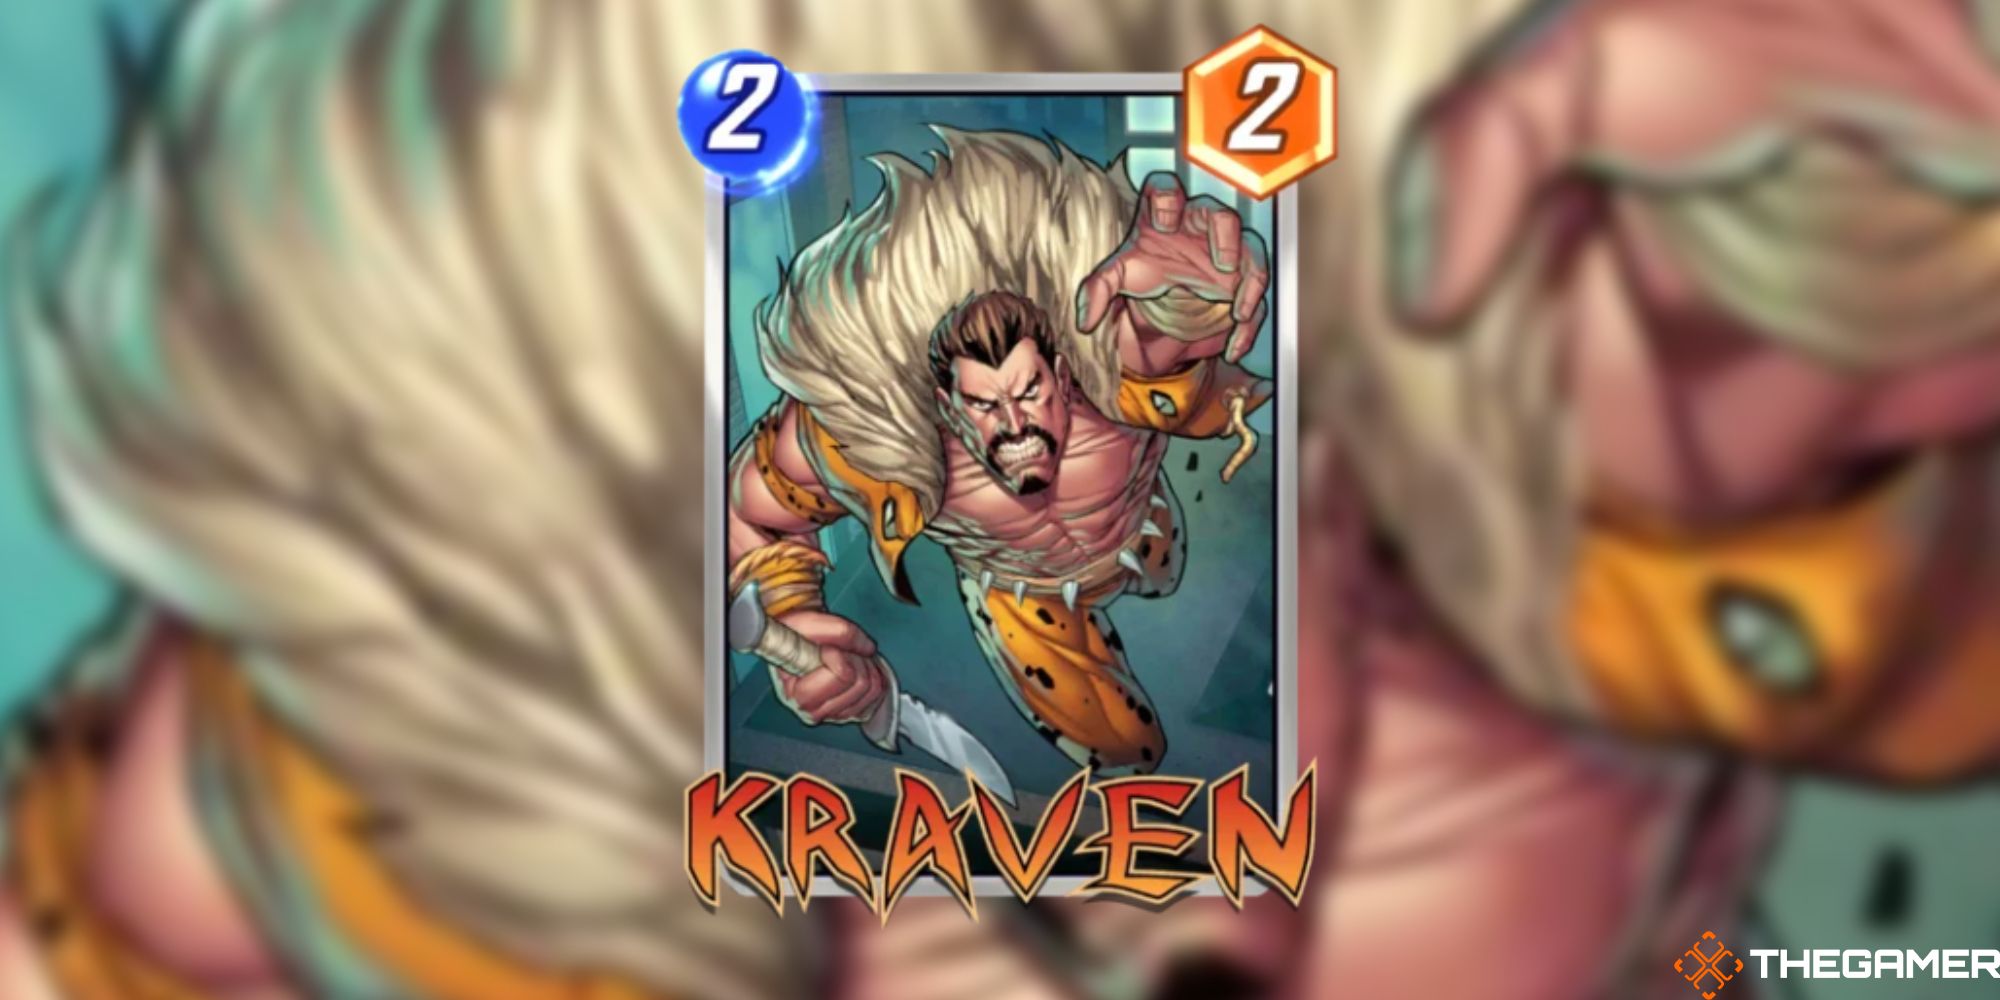 Marvel Snap - Kraven on a blurred background